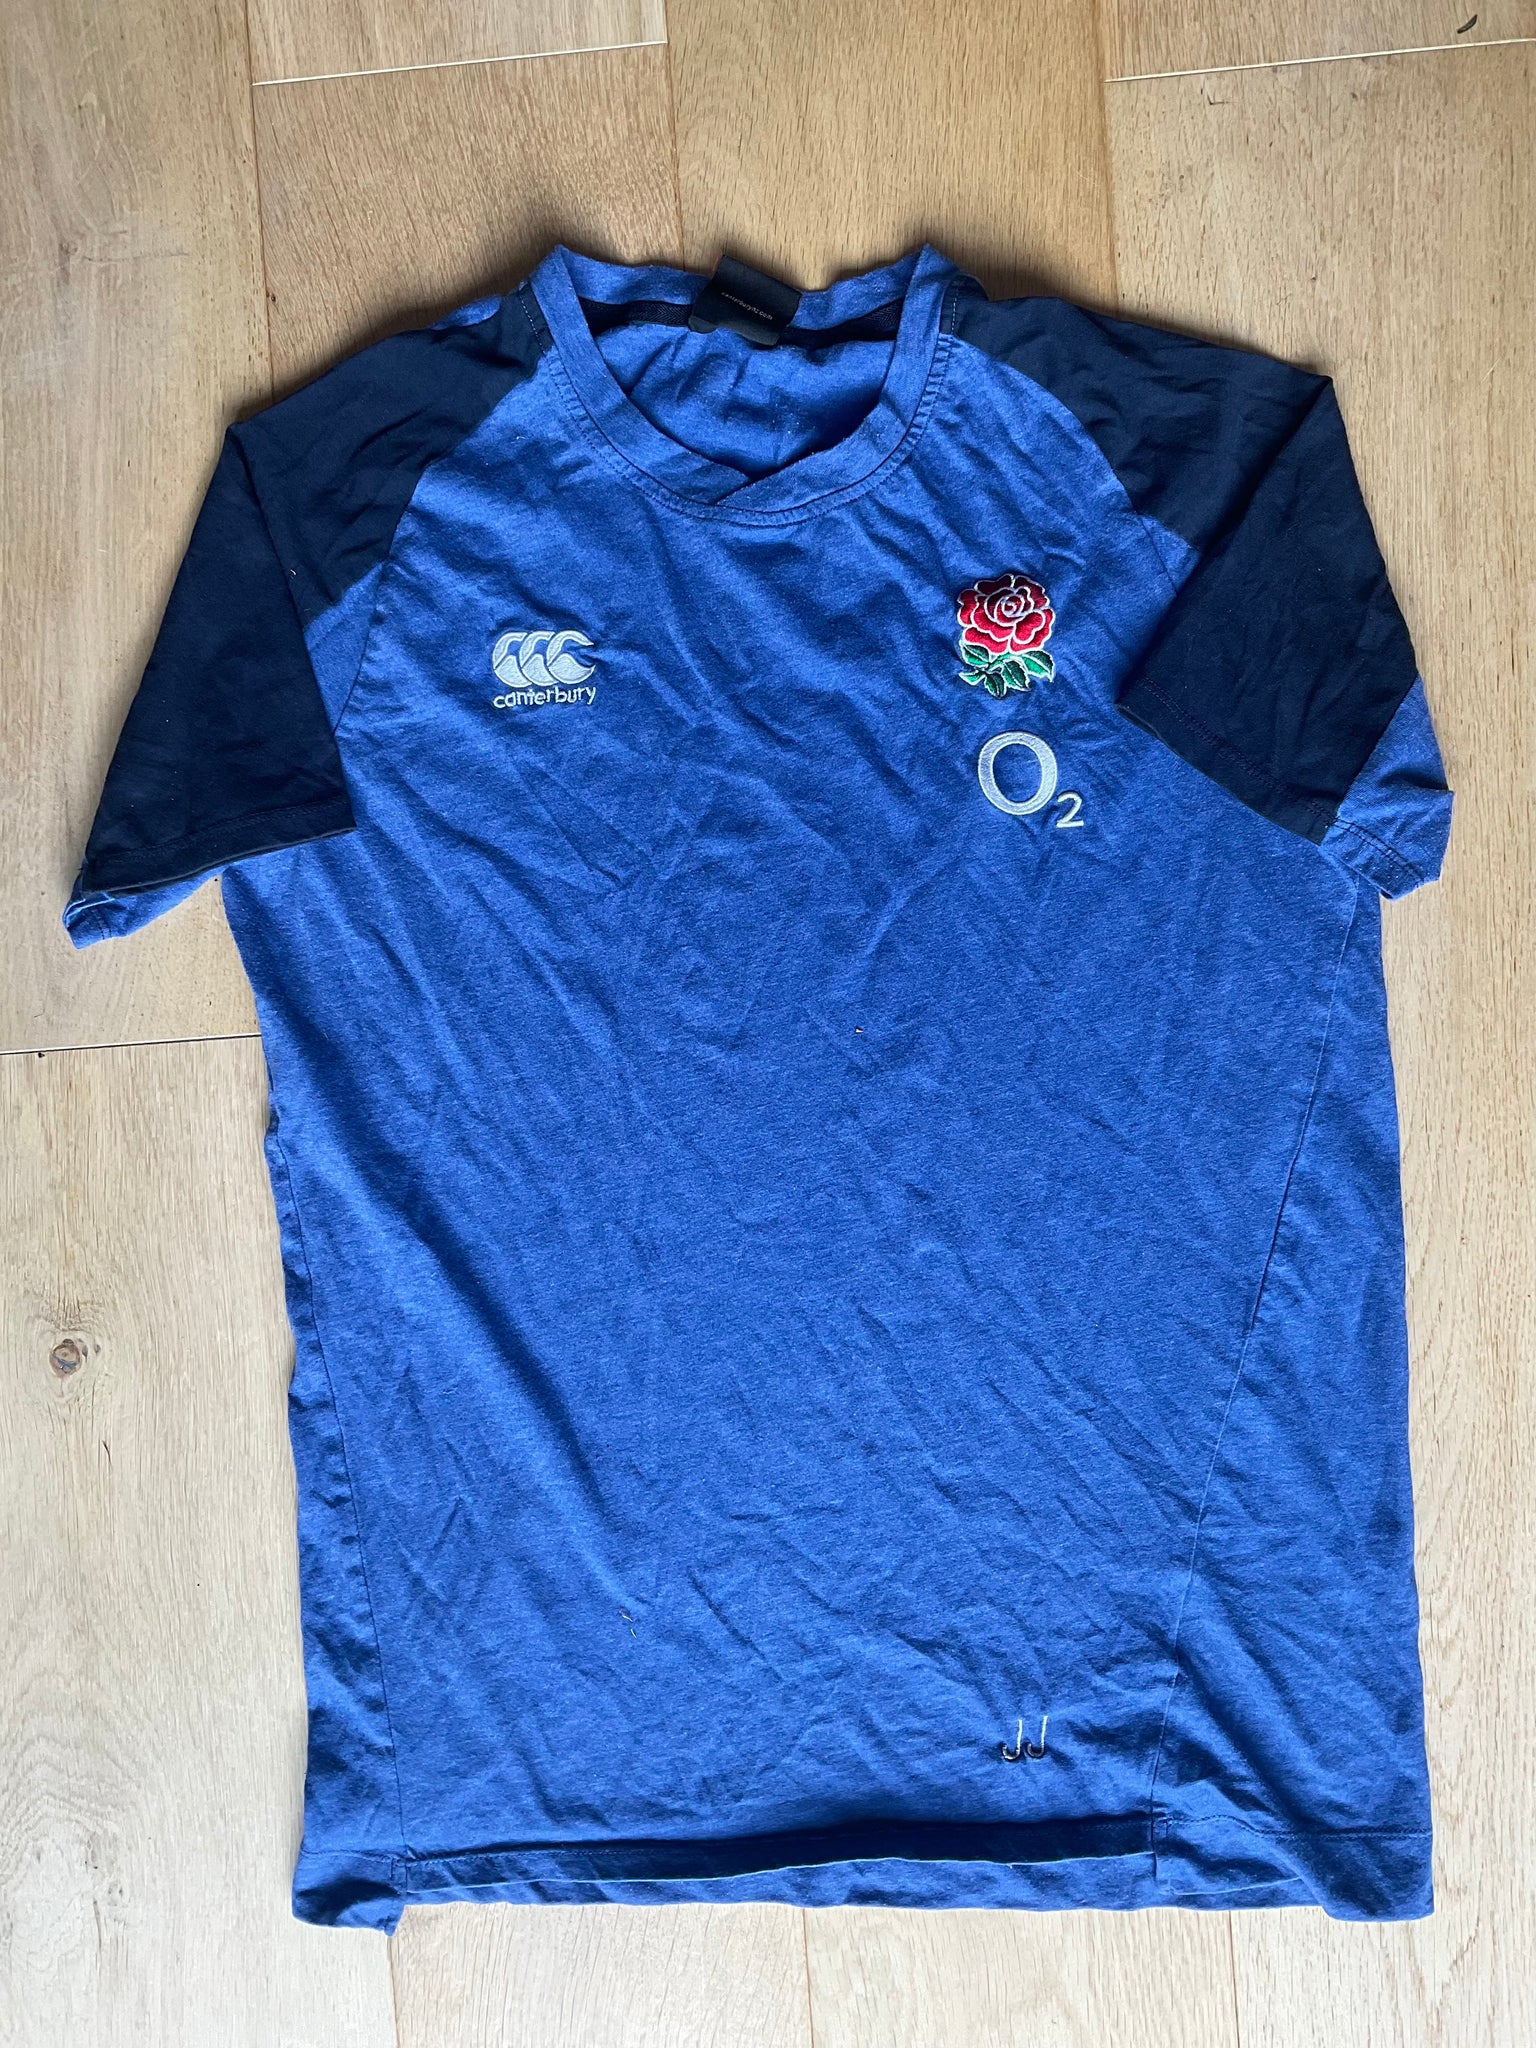 Jonathan Joseph - England Rugby T-Shirt [Dark & Light Blue]